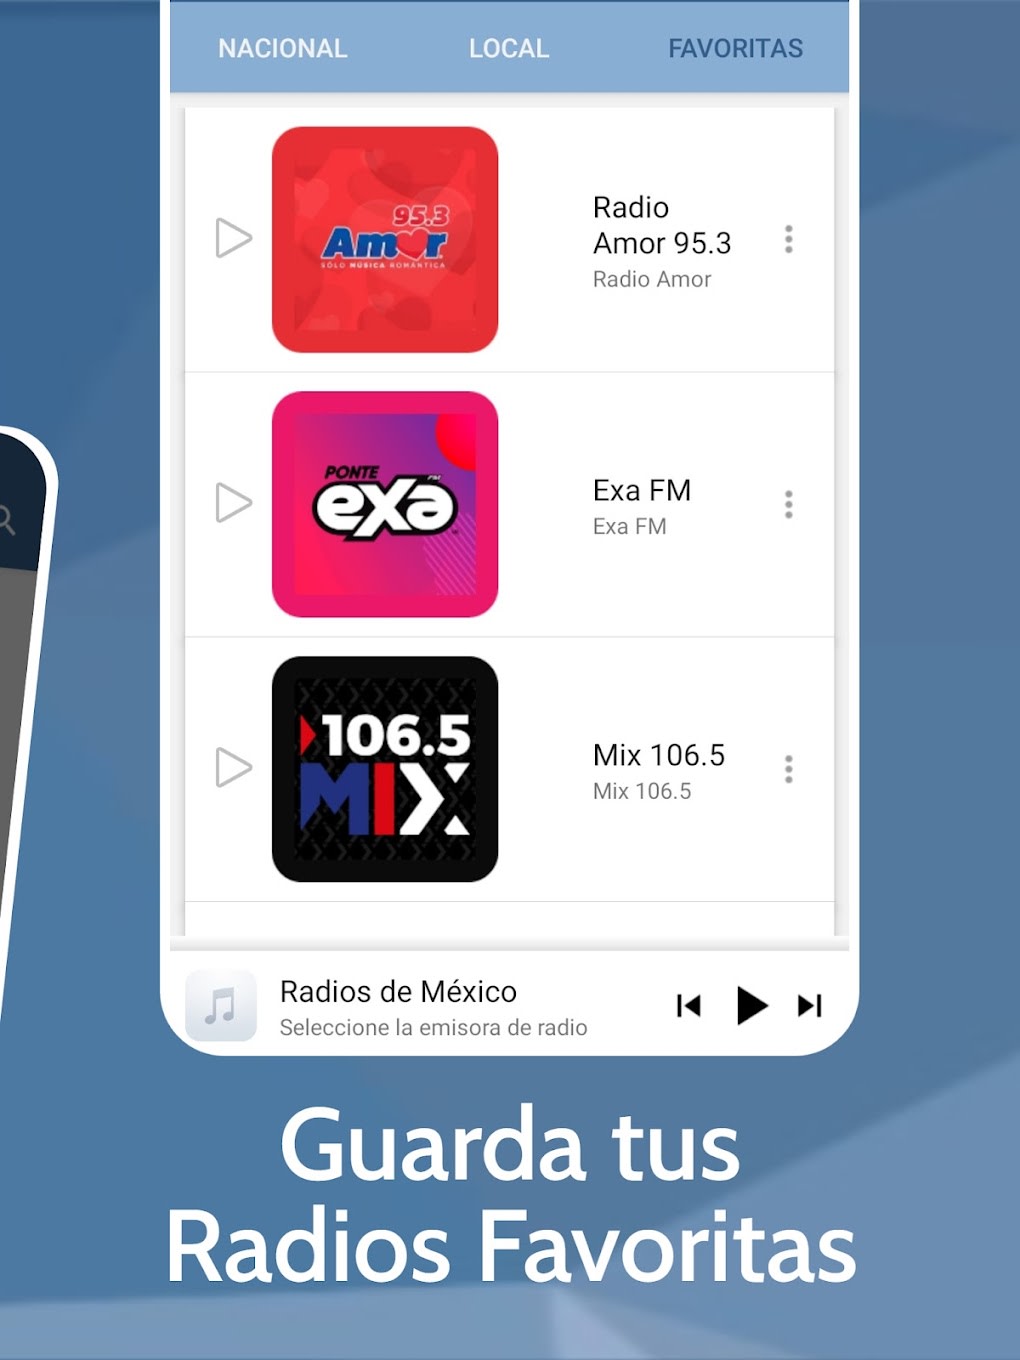 Radios De Mexico En Vivo Fmam For Android Download 8516